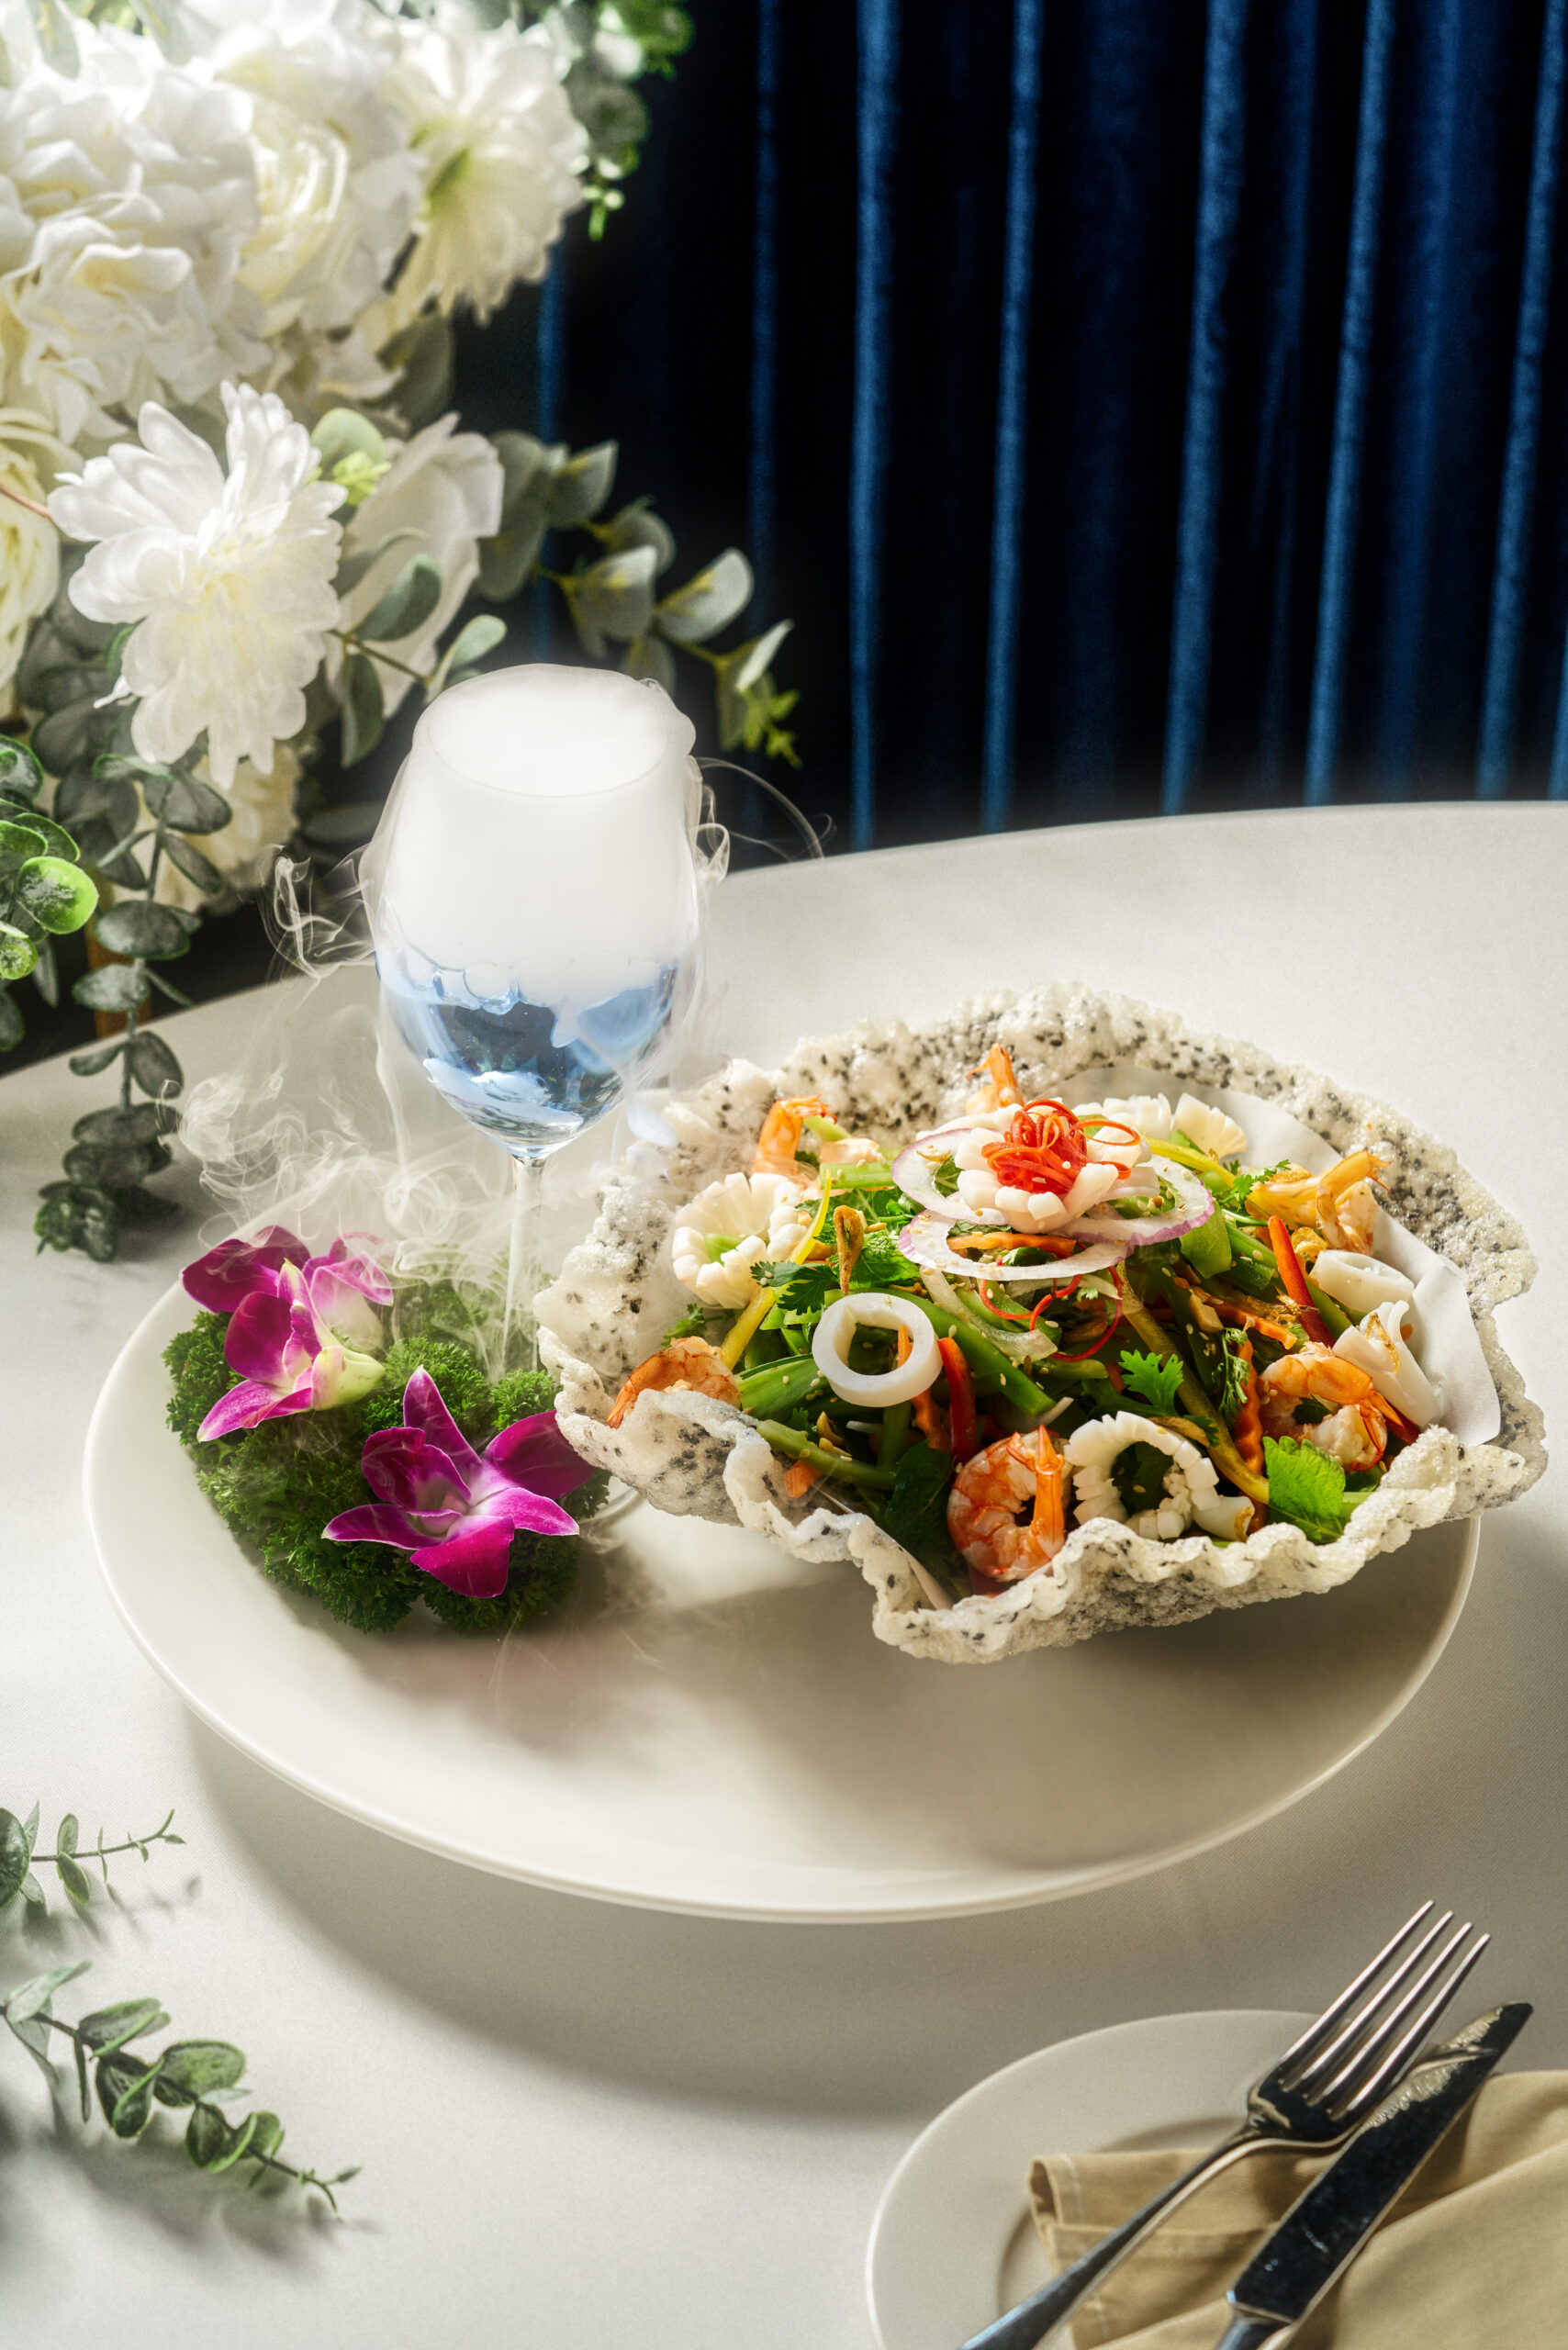 Salad tiến vua hải sản là một trong những món ăn thượng hạng không thể thiếu trong menu của trung tâm tiệc cưới W.Jardin